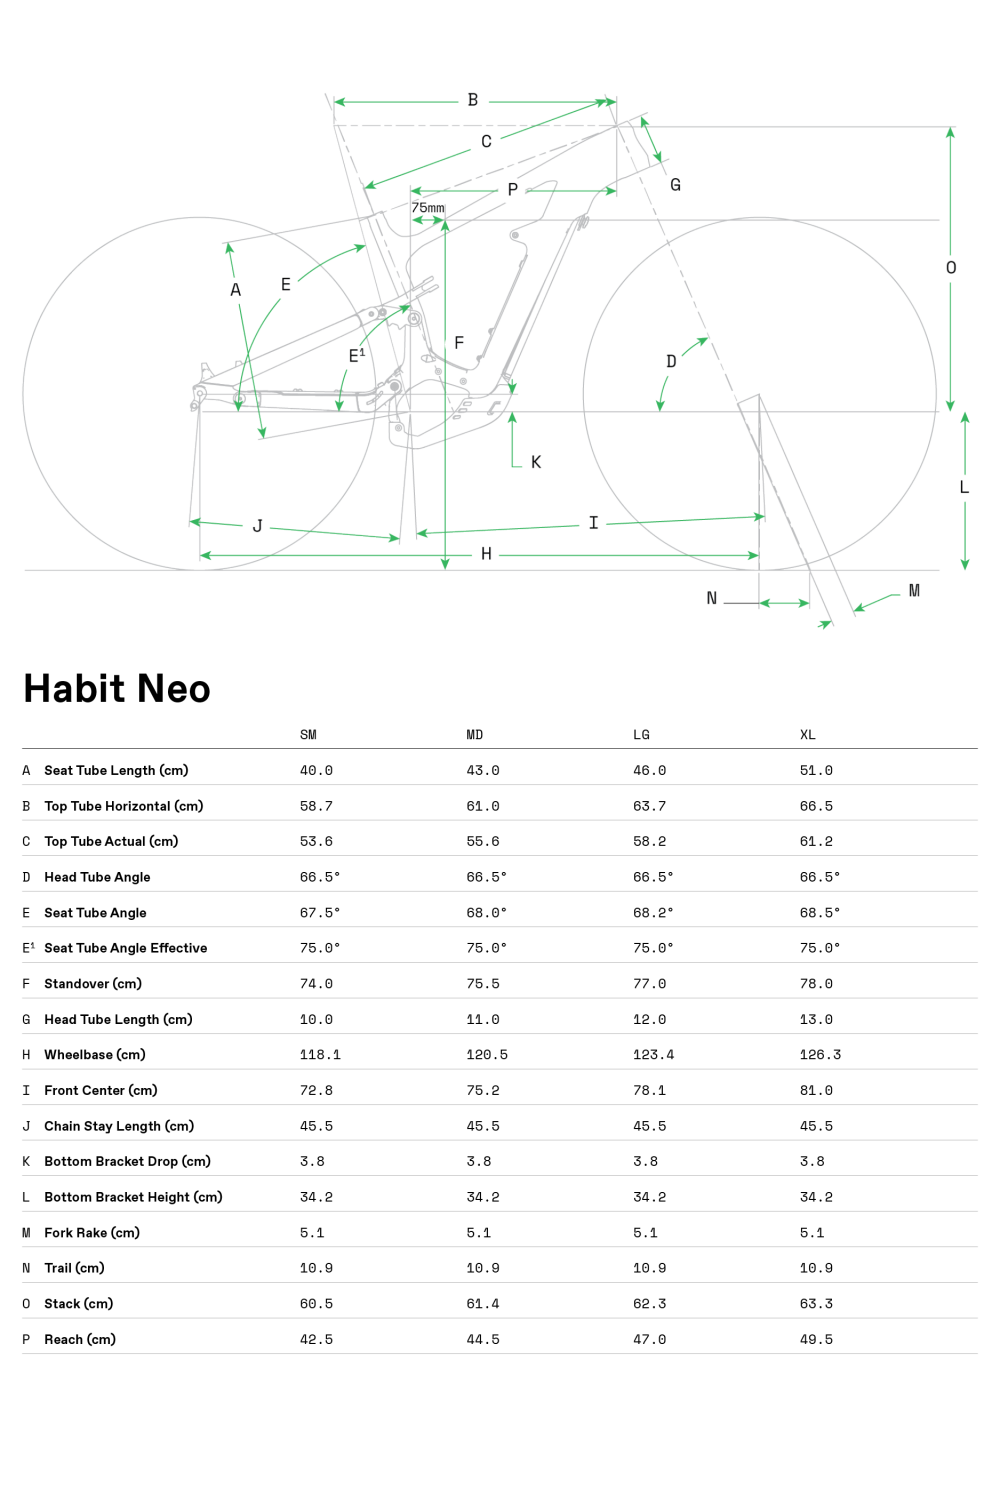 Habit Neo 1 - 